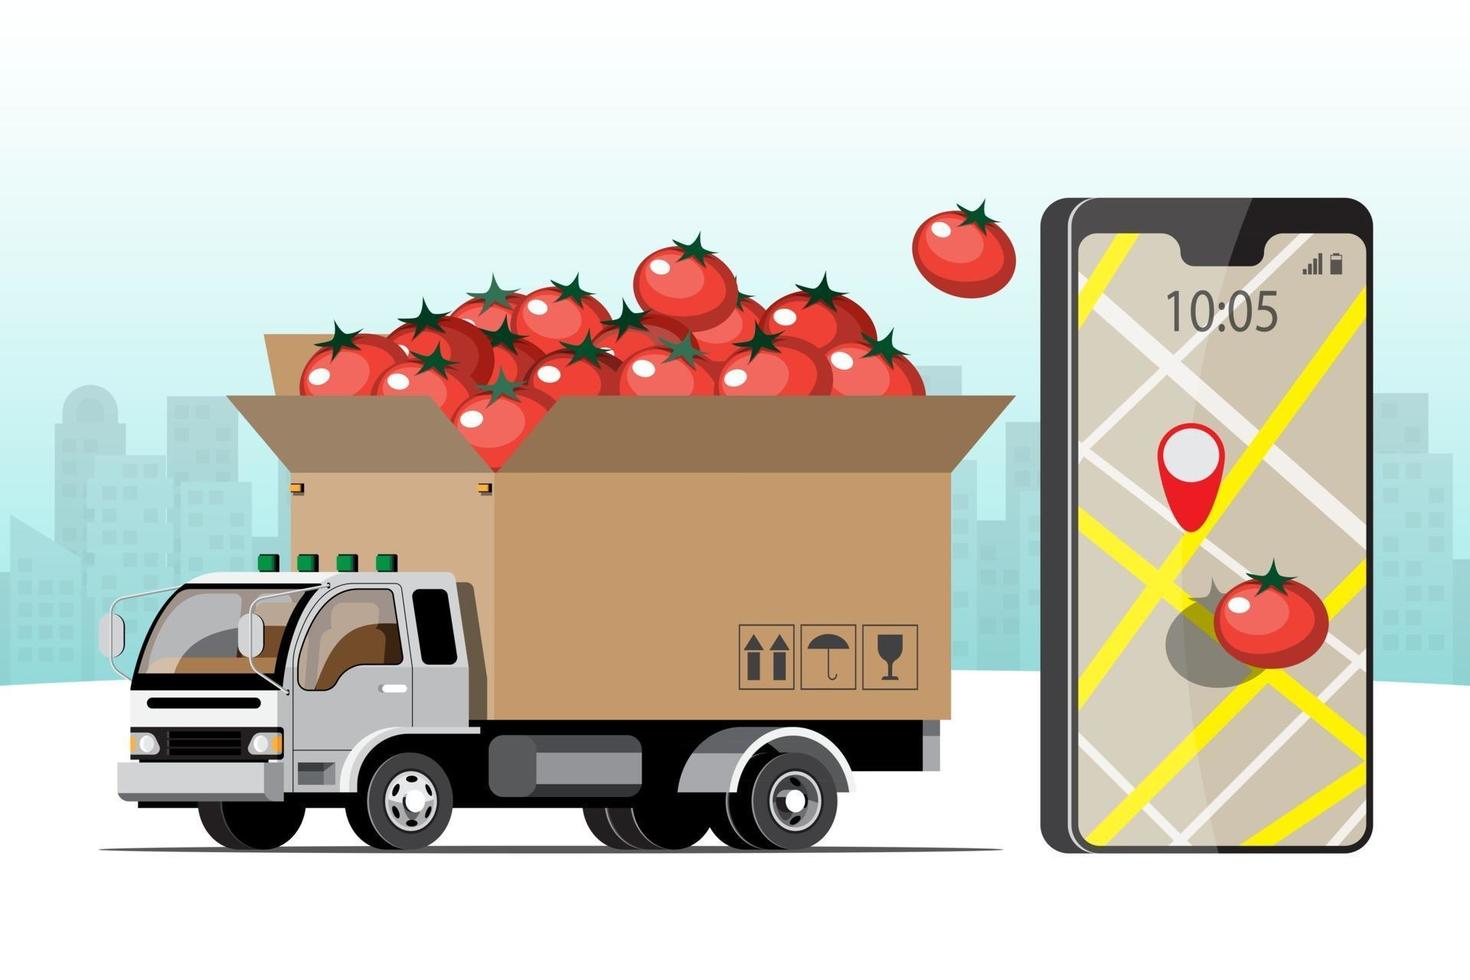 grote geïsoleerde voertuig vector kleurrijke pictogrammen, platte illustraties van levering per busje via gps-tracking locatie. leveringsvoertuig, levering van goederen en eten, onmiddellijke levering, online levering.